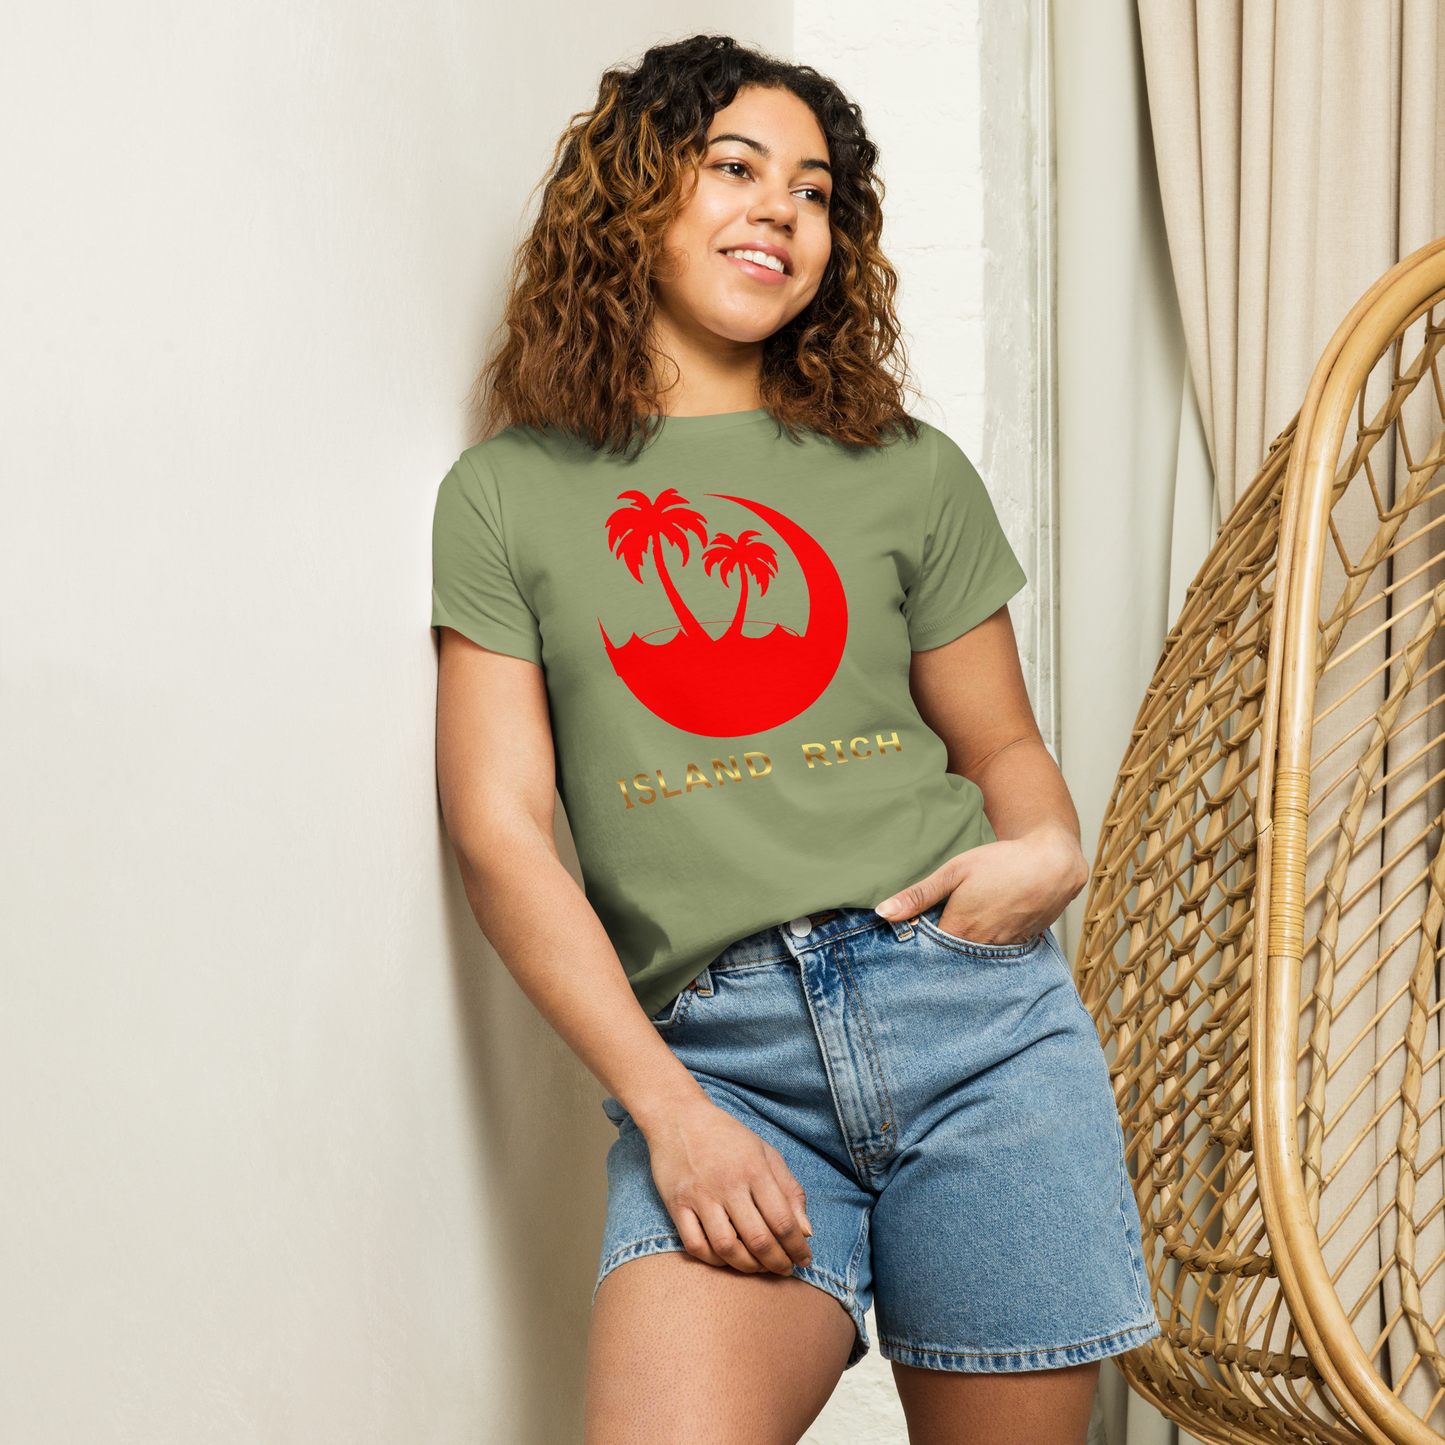 Women’s island rich high-waisted t-shirt